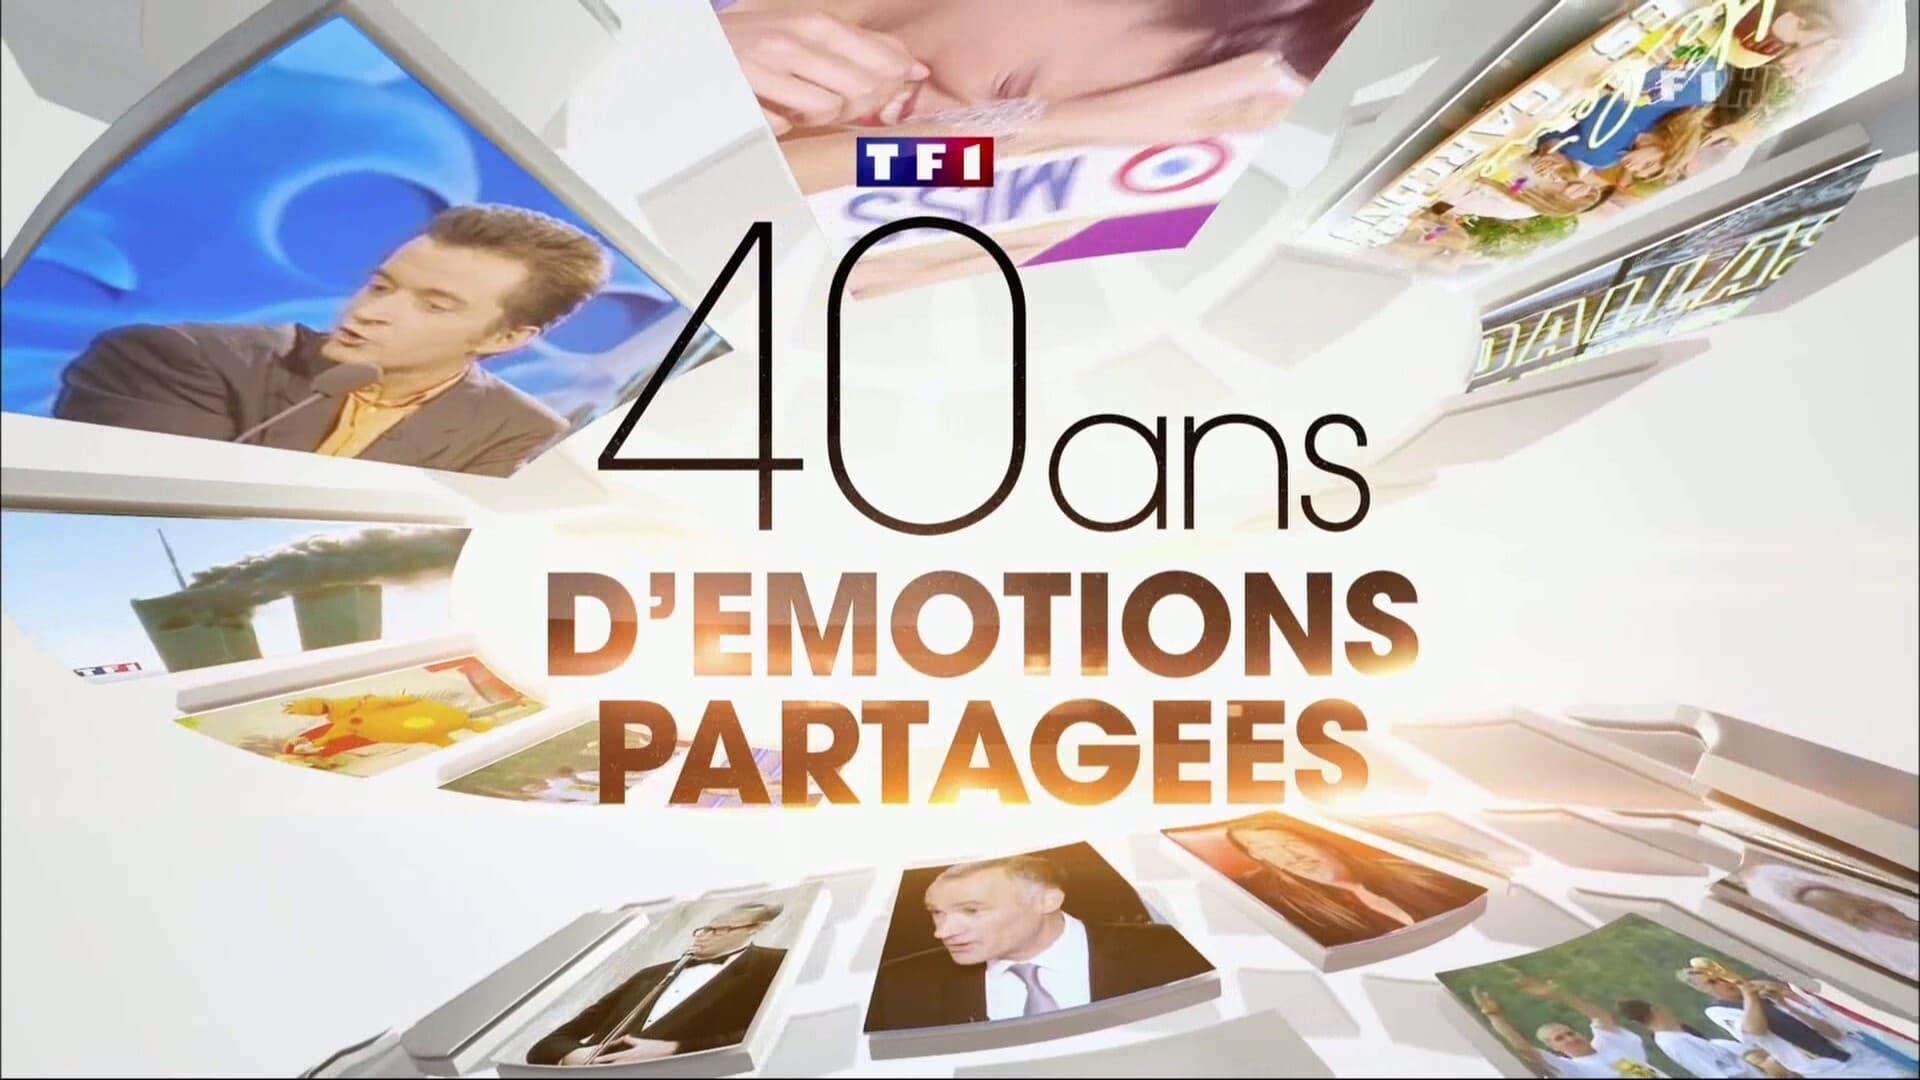 TF1 40 ans d'émotions partagées backdrop